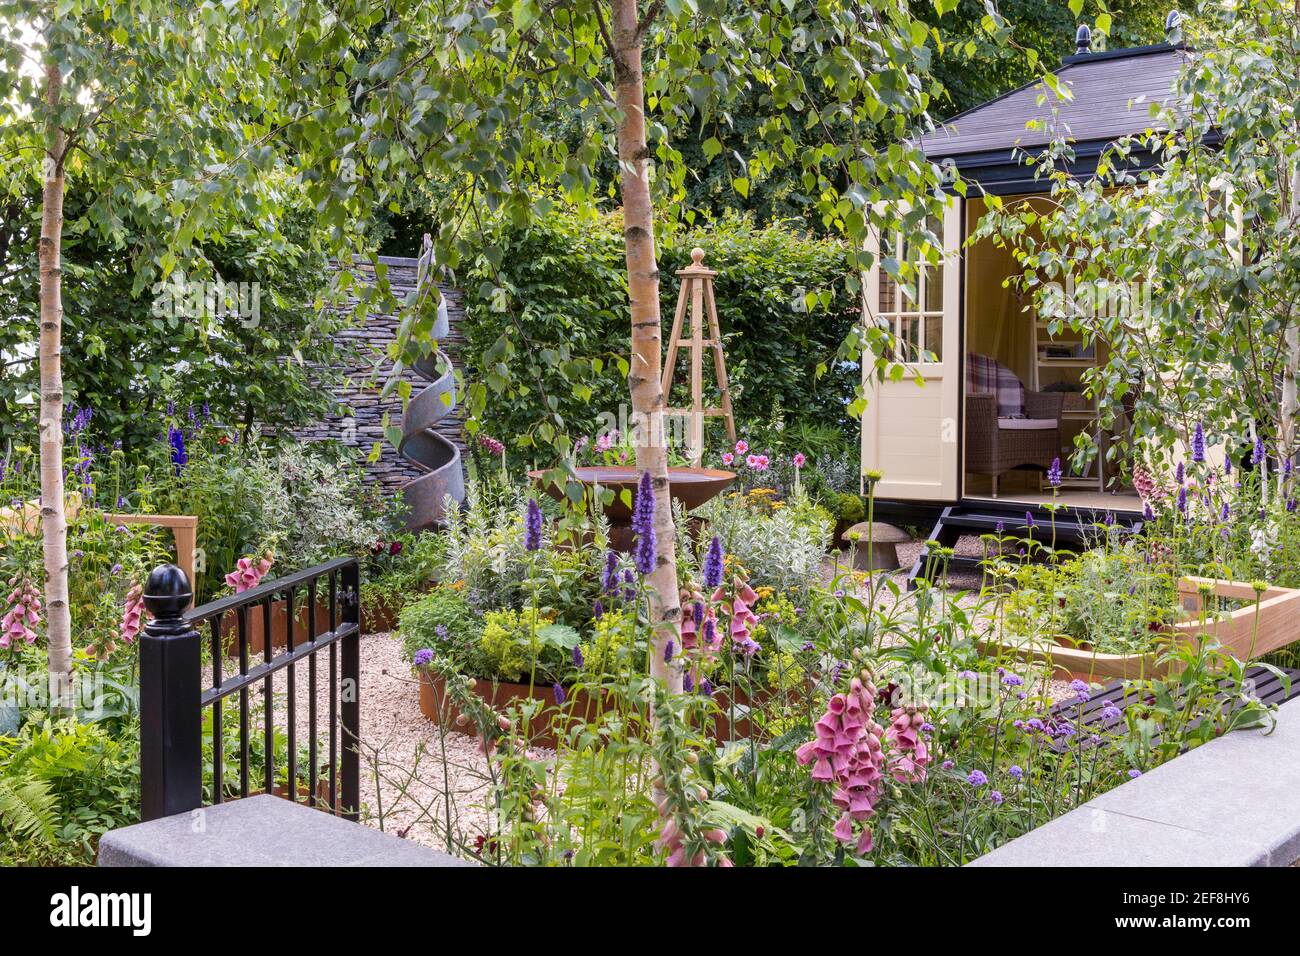 Ein kleiner englischer Landhausgarten mit Summerhouse Shepherds Hut in Schottergarten, der von Home Office Hochbeet Blume Border Obelisk UK arbeitet Stockfoto